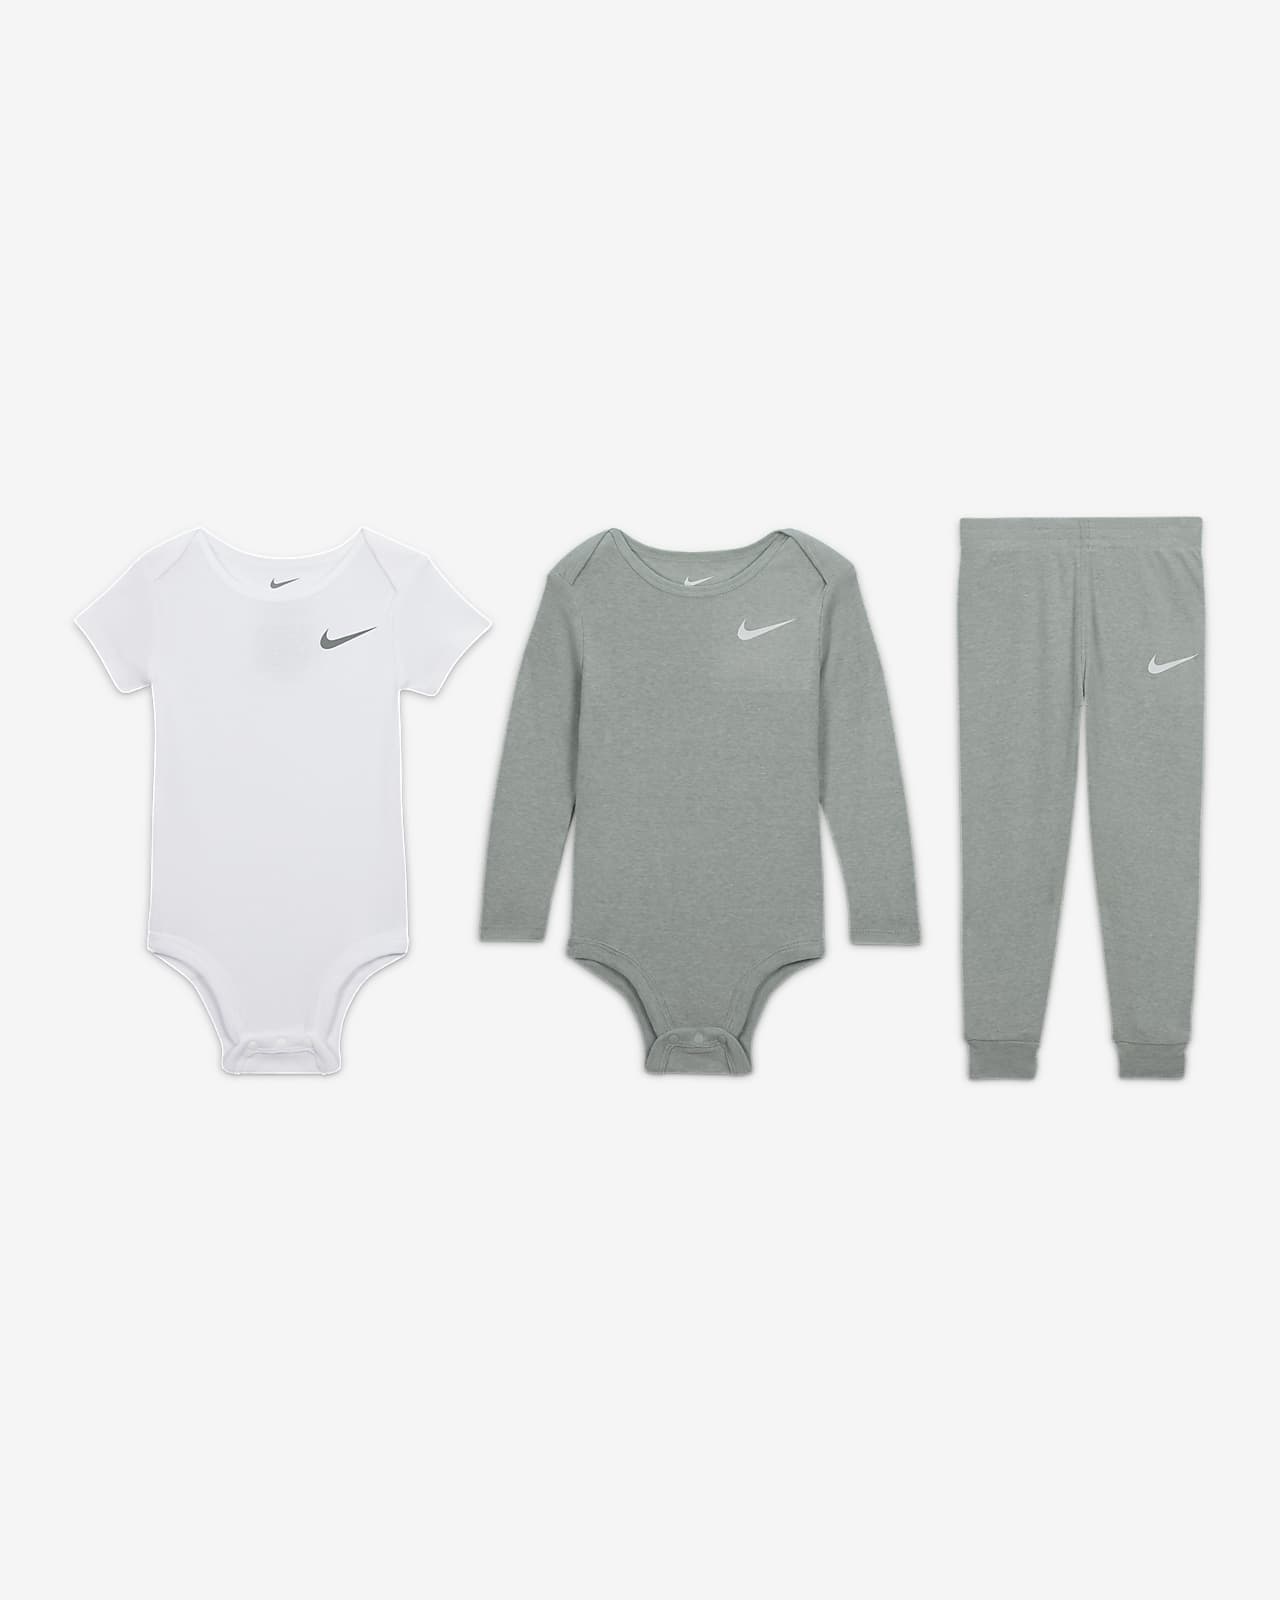 Nike Essentials 3-Piece Pants 3-Piece Set. Set Baby